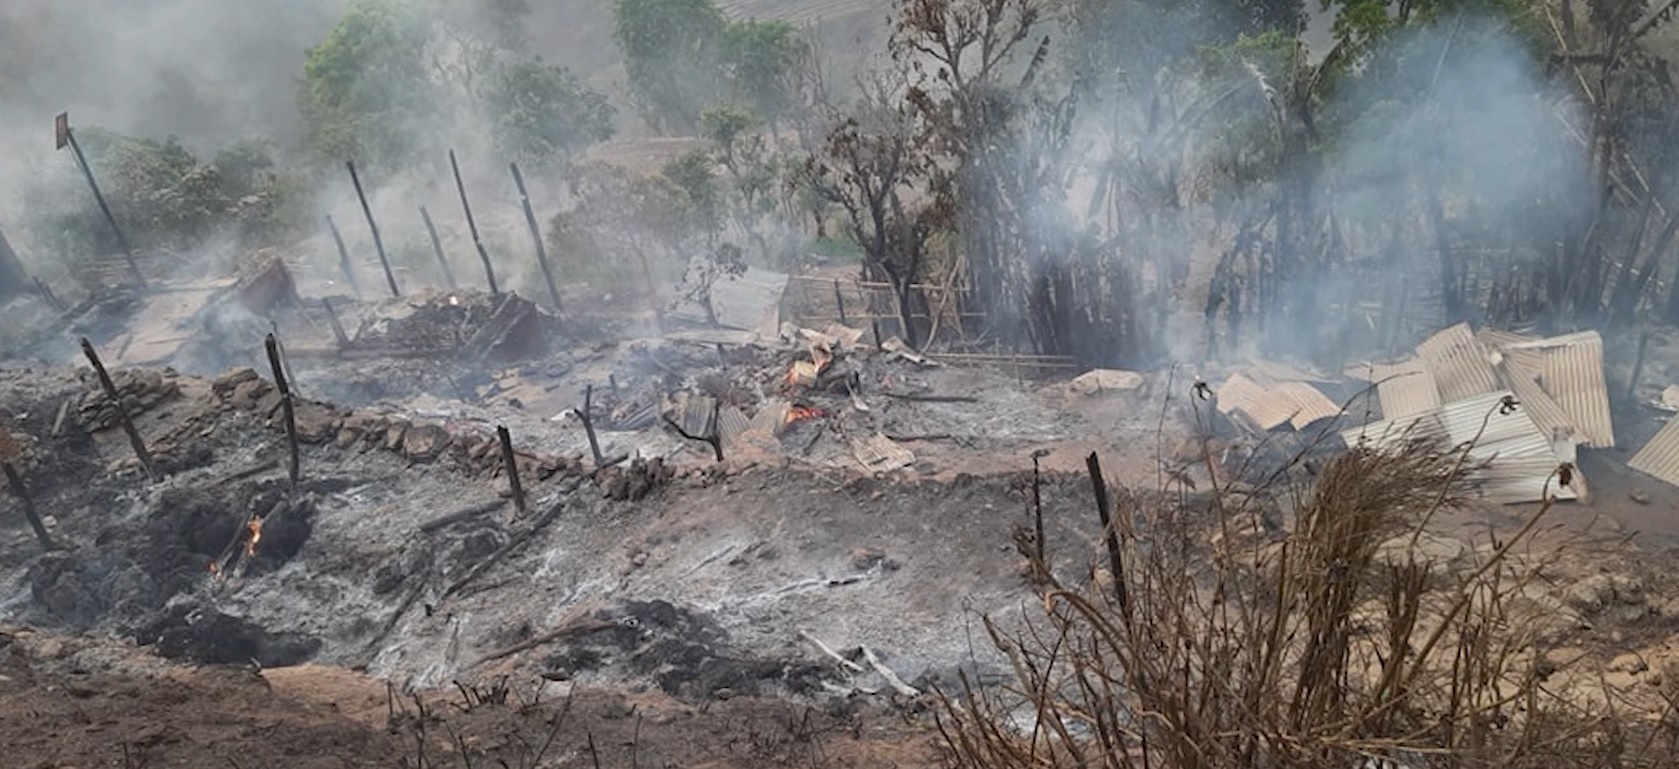 भोजपुरमा डढेलो गाउँ पस्दा चार घर जलेर नष्ट